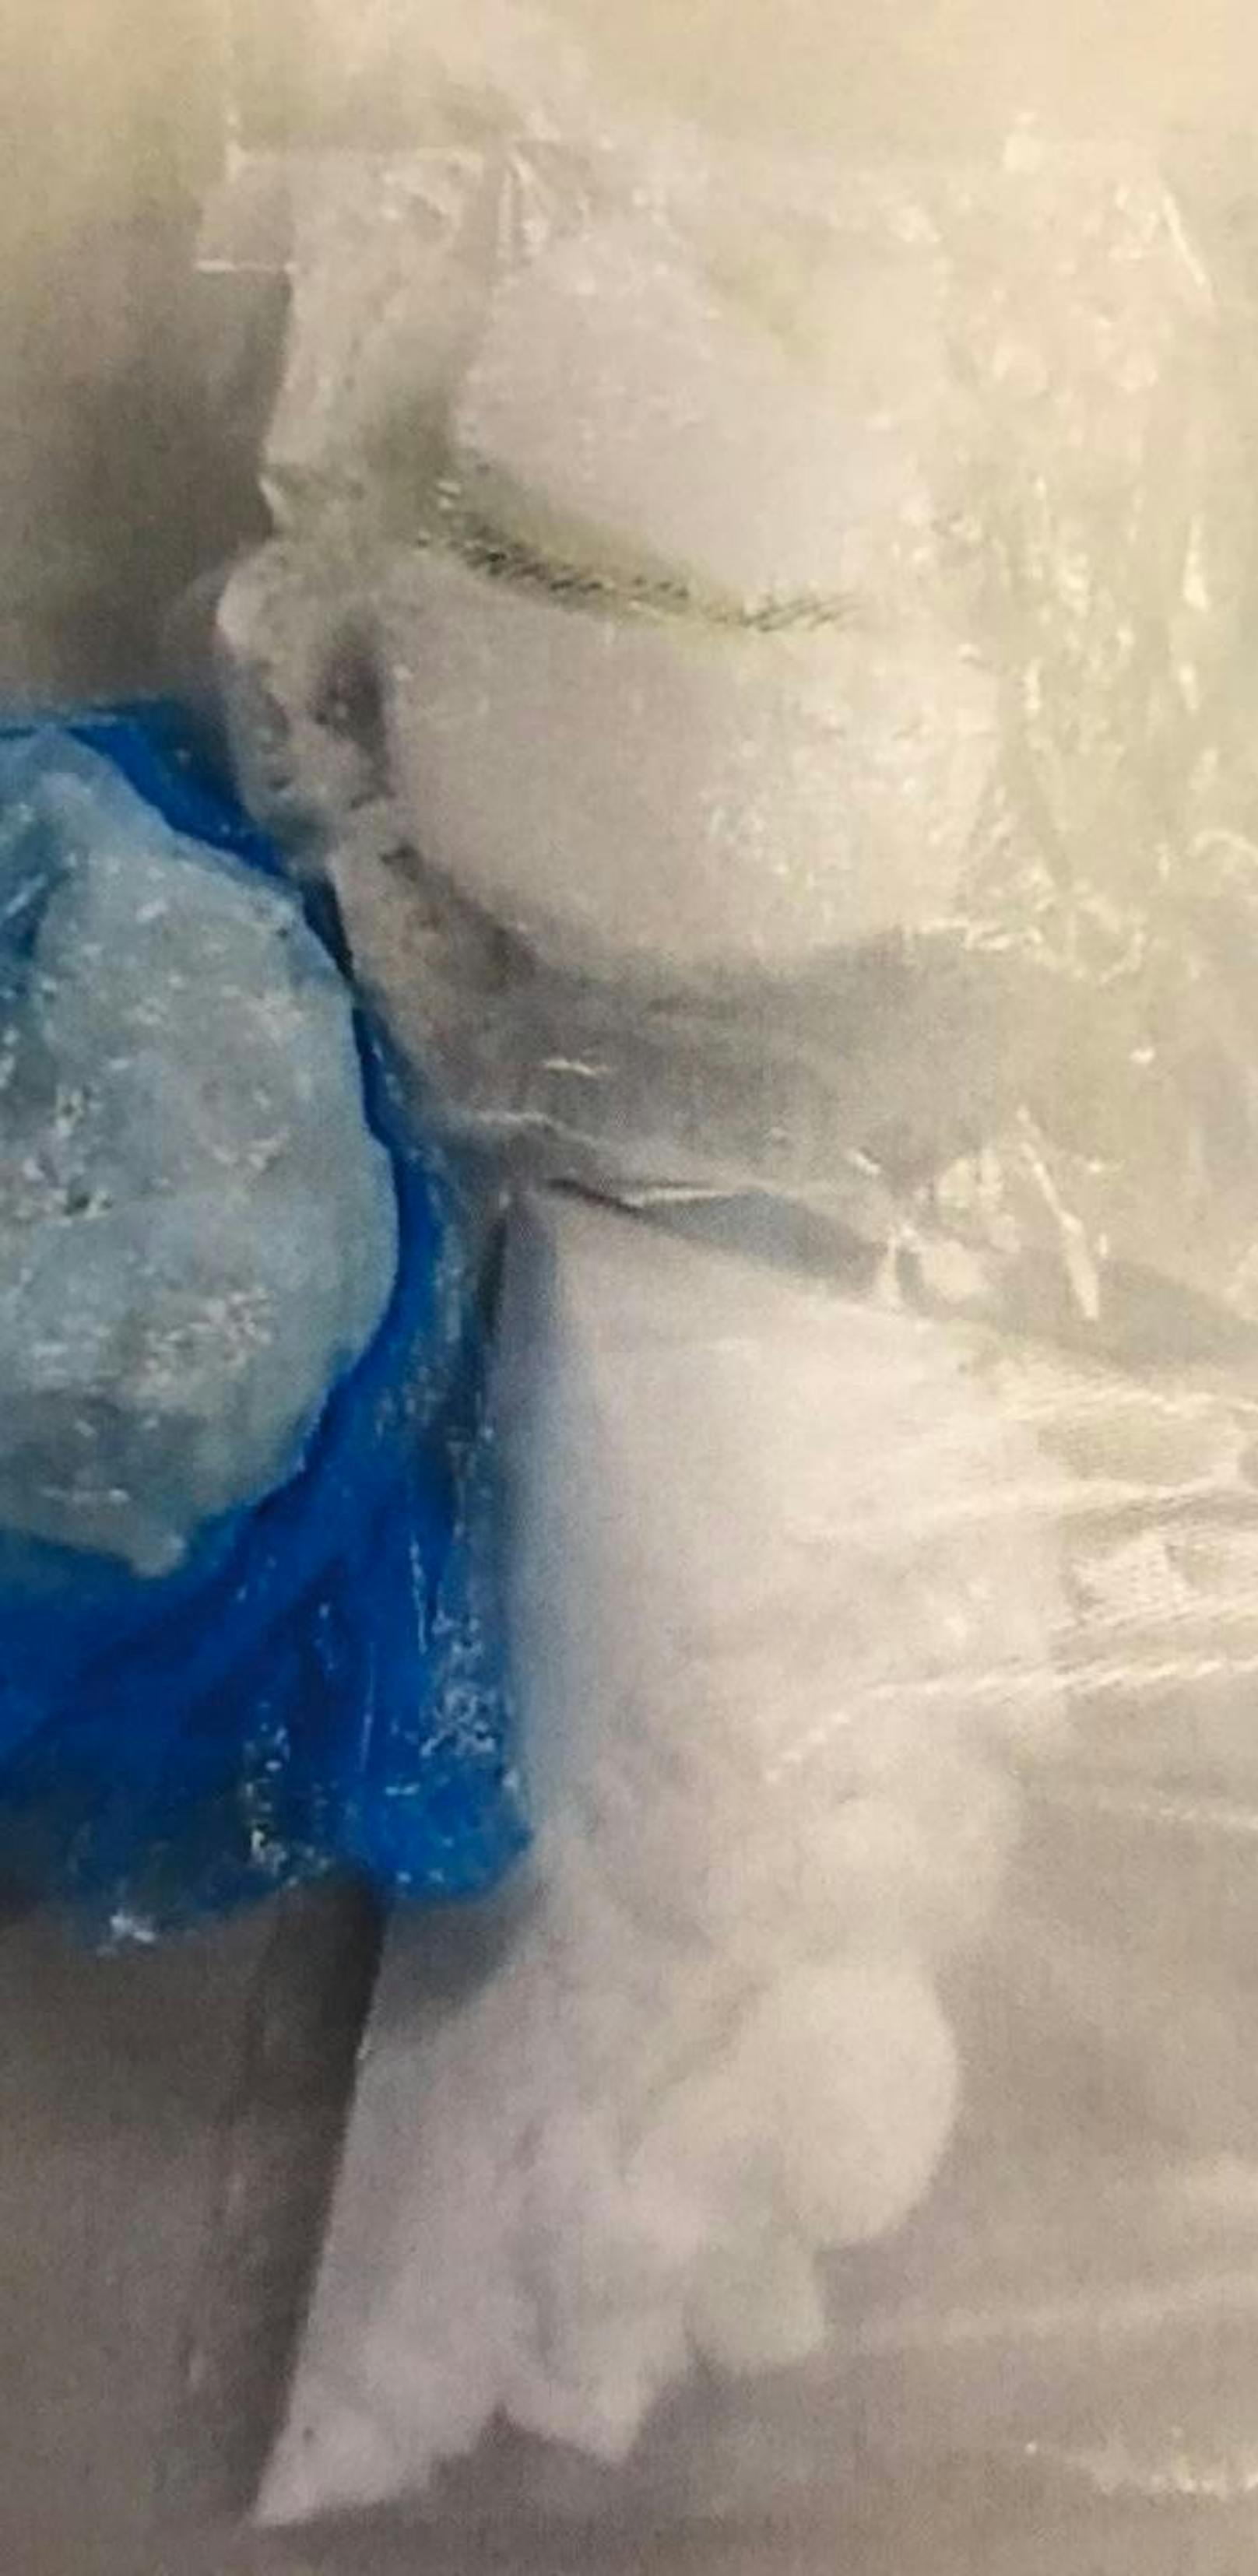 Insgesamt 570 Gramm Kokain konnten die Beamten sicherstellen. 